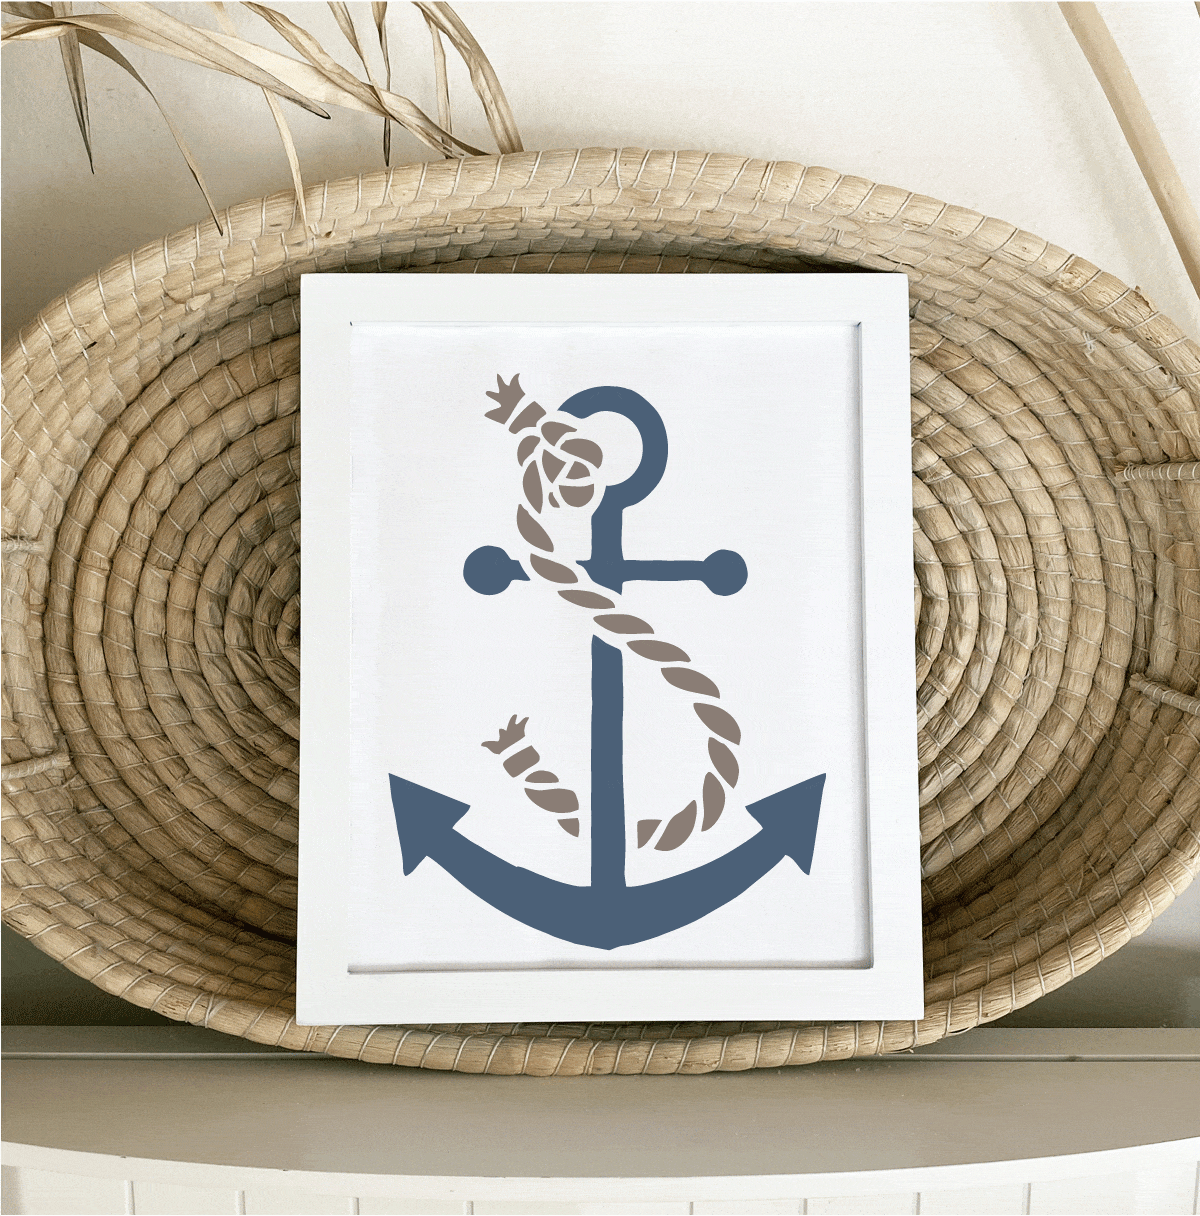 nautical stencil